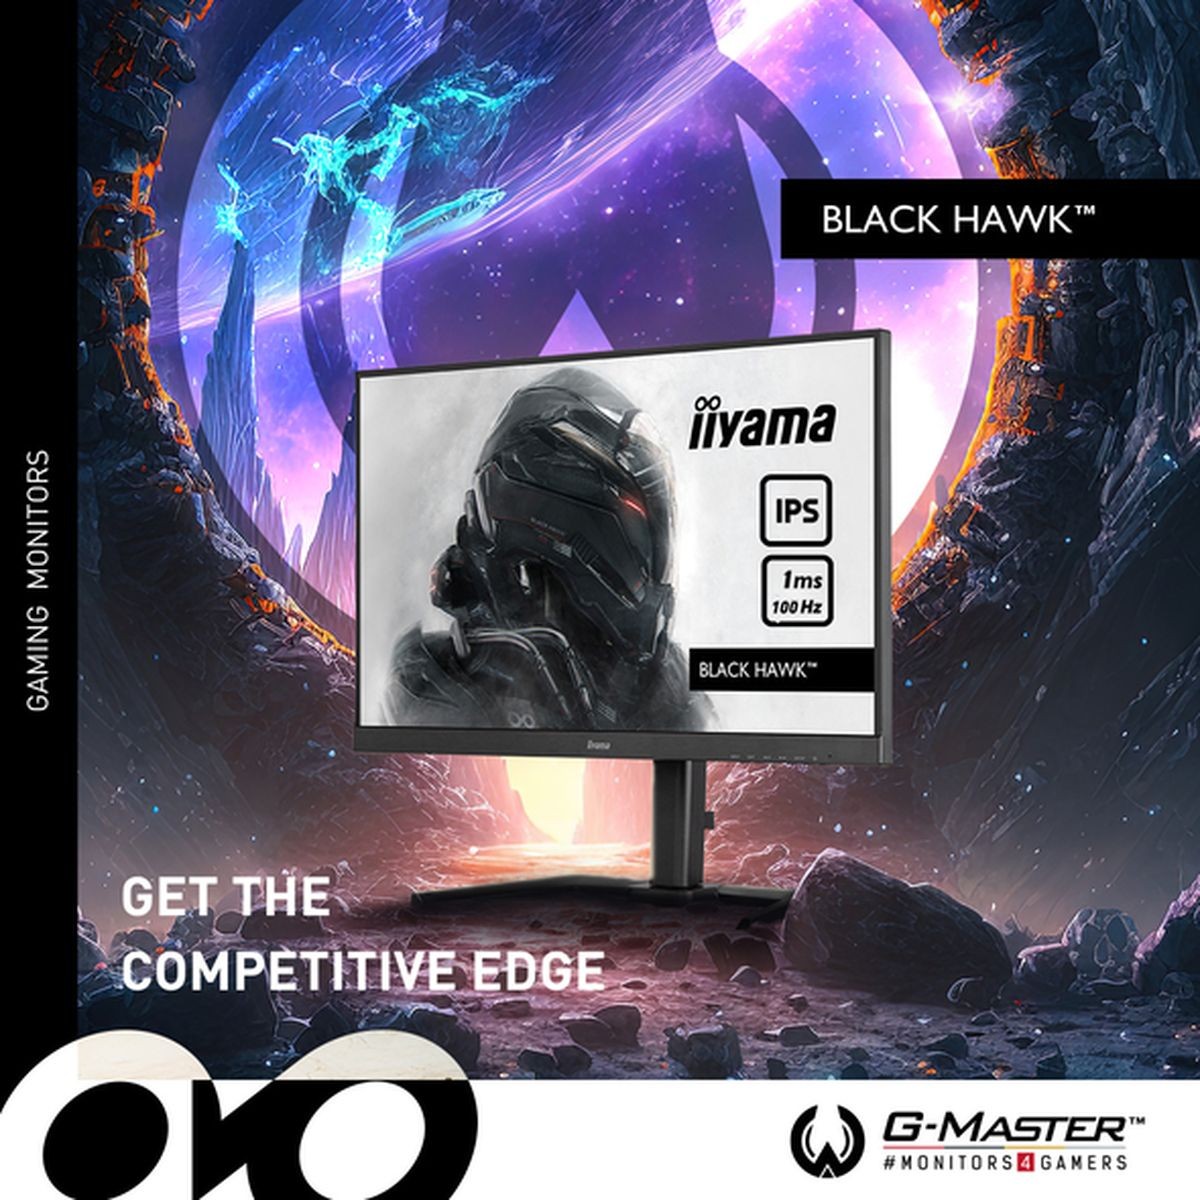 iiyama élargit sa gamme G-Master avec six nouveaux modèles Black Hawk donnant aux joueurs amateurs un avantage concurrentiel.